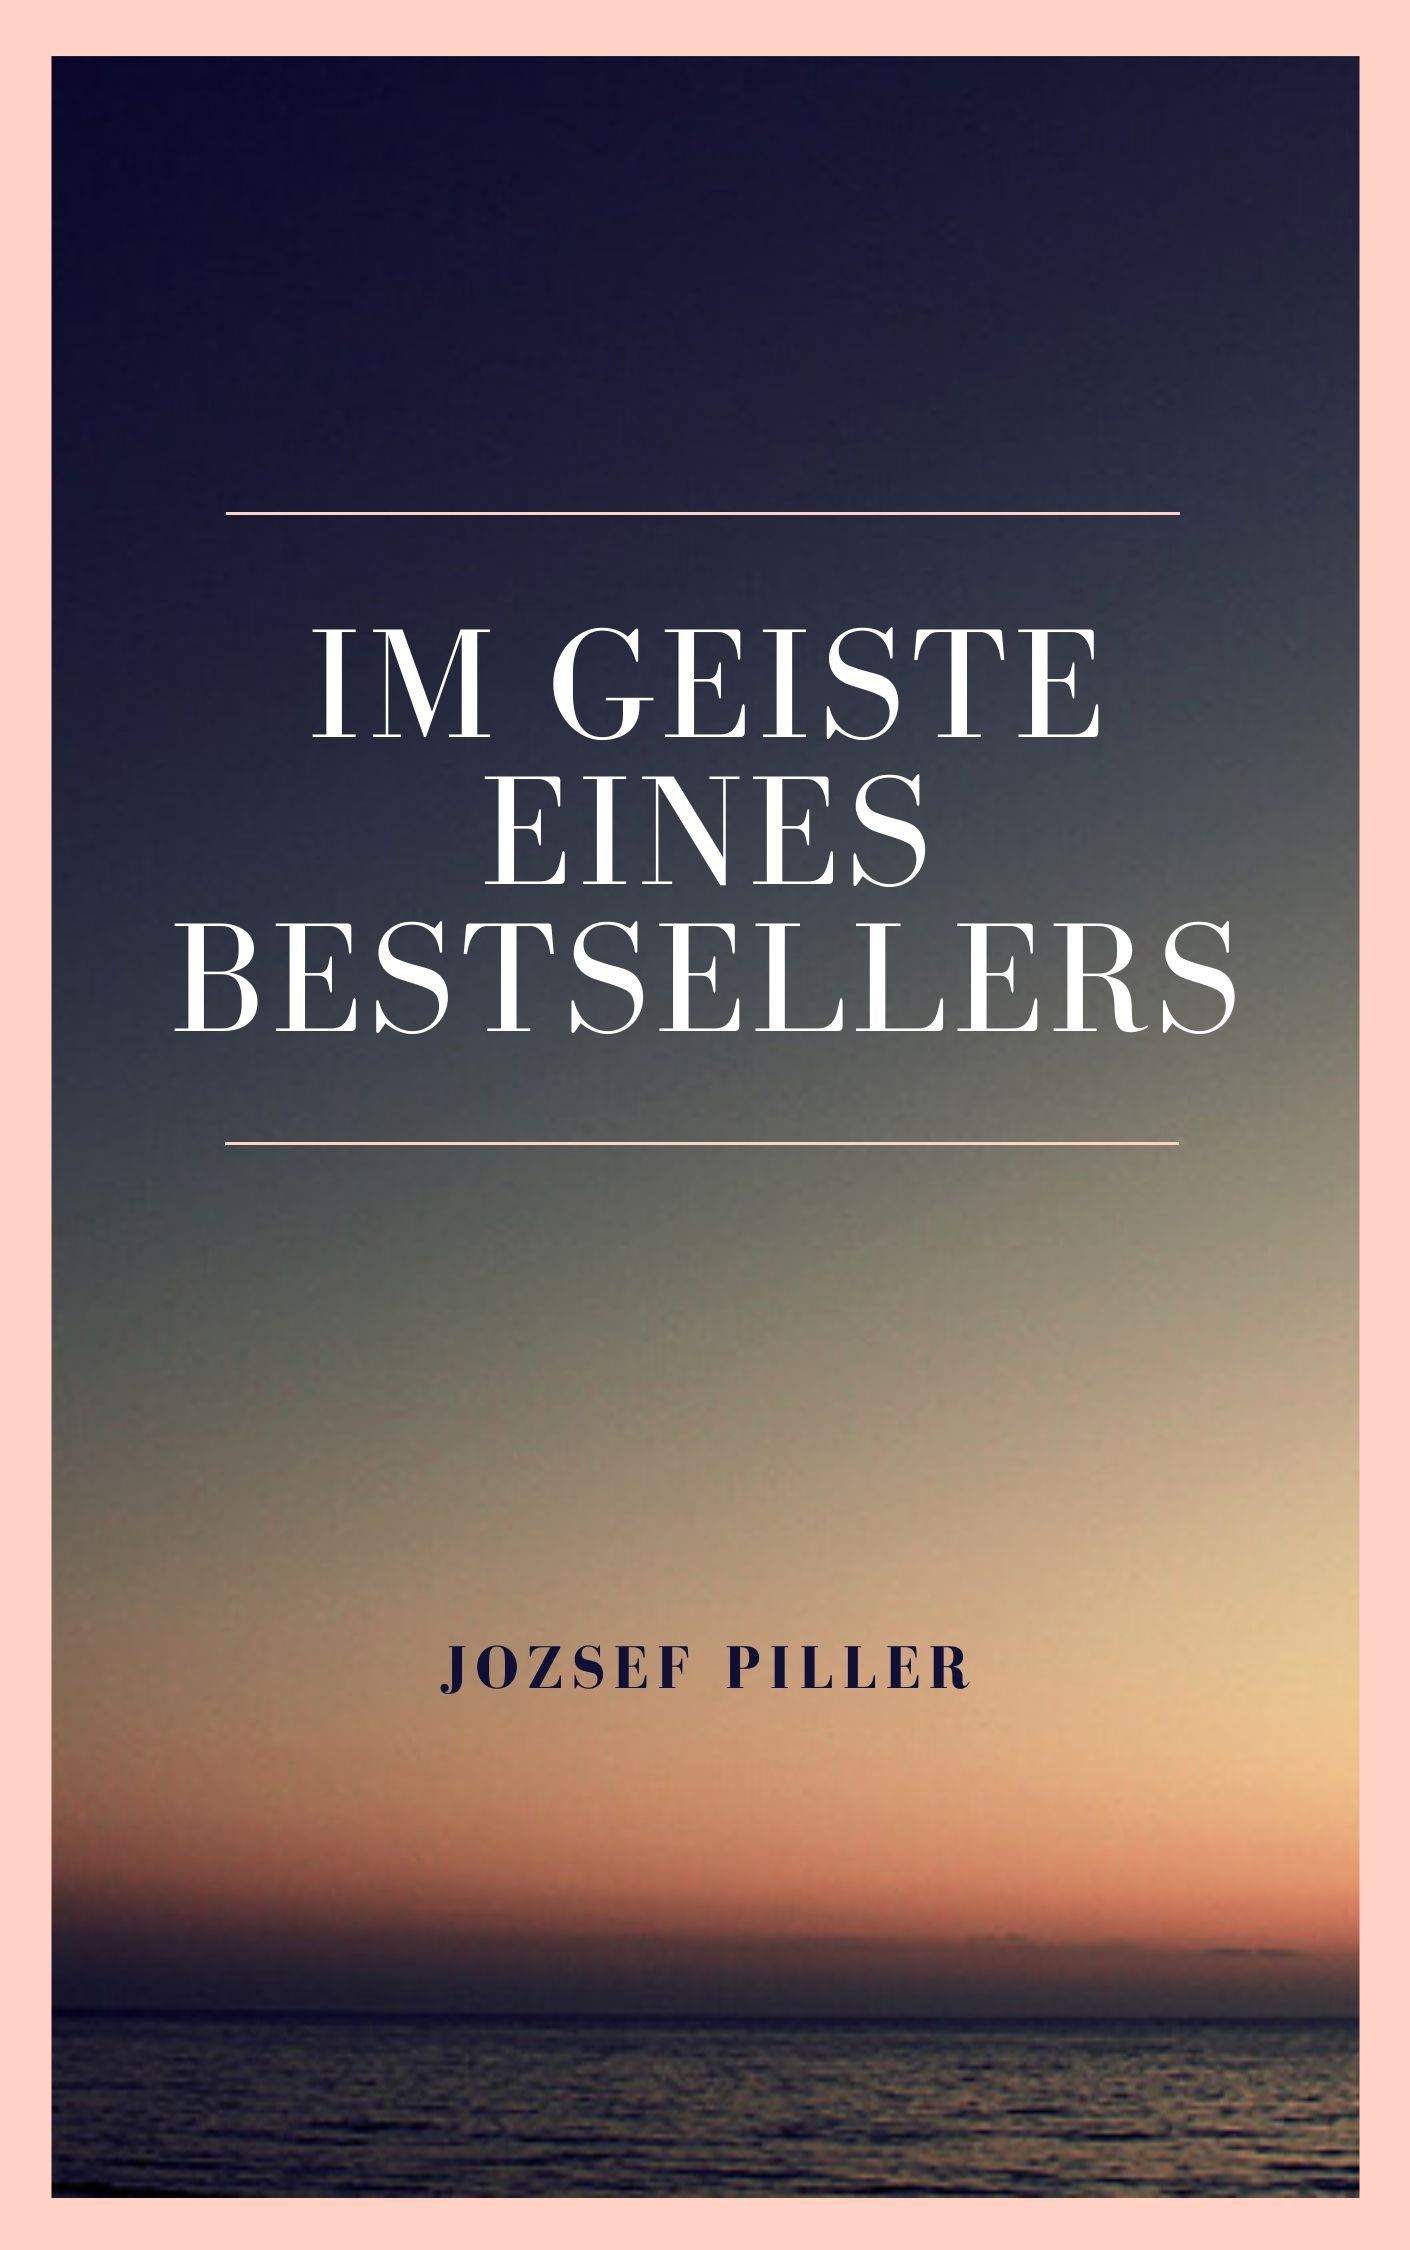 Im Geiste eines Bestsellers, e-bok av Jozsef Piller